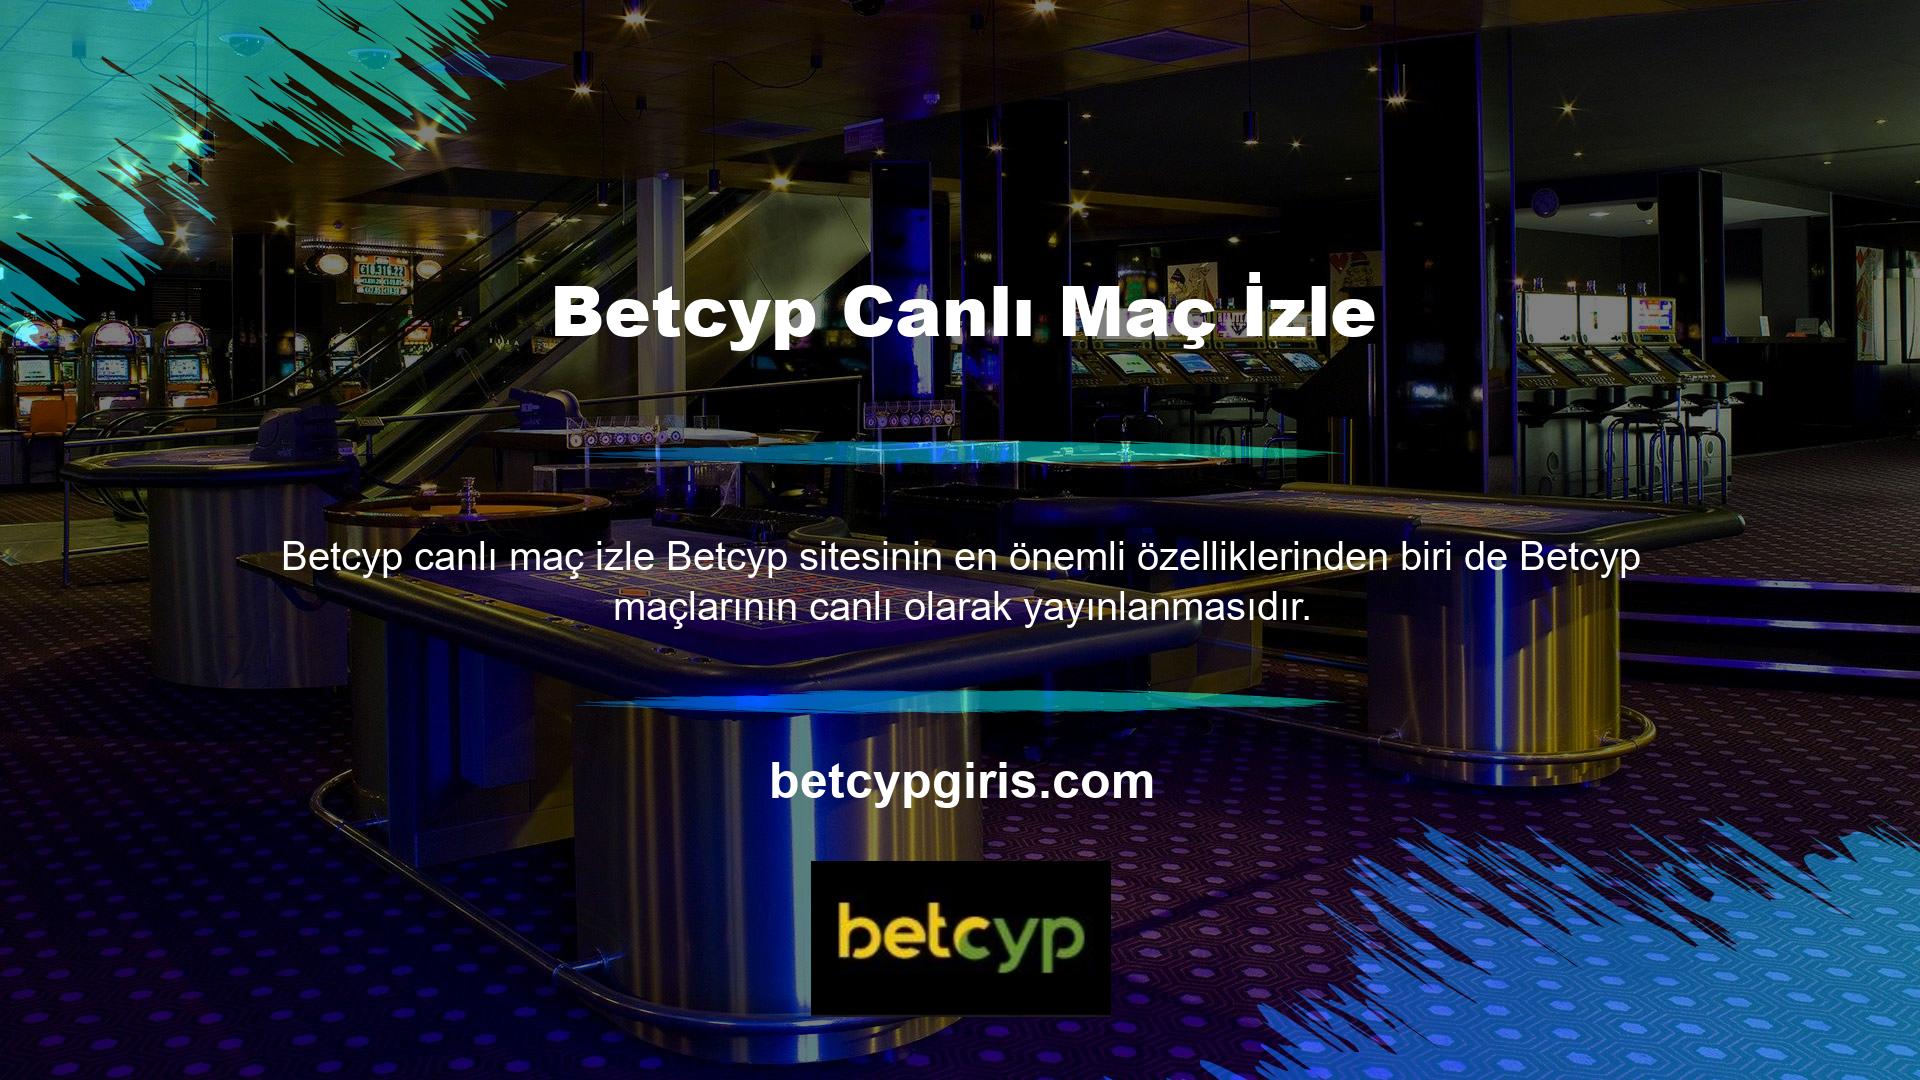 Birçok uluslararası bahis sitesinde bu özellik bulunmazken, Betcyp üyelere kapsamlı bir hizmet sunmak için gerçek zamanlı maç takibi bulunmaktadır